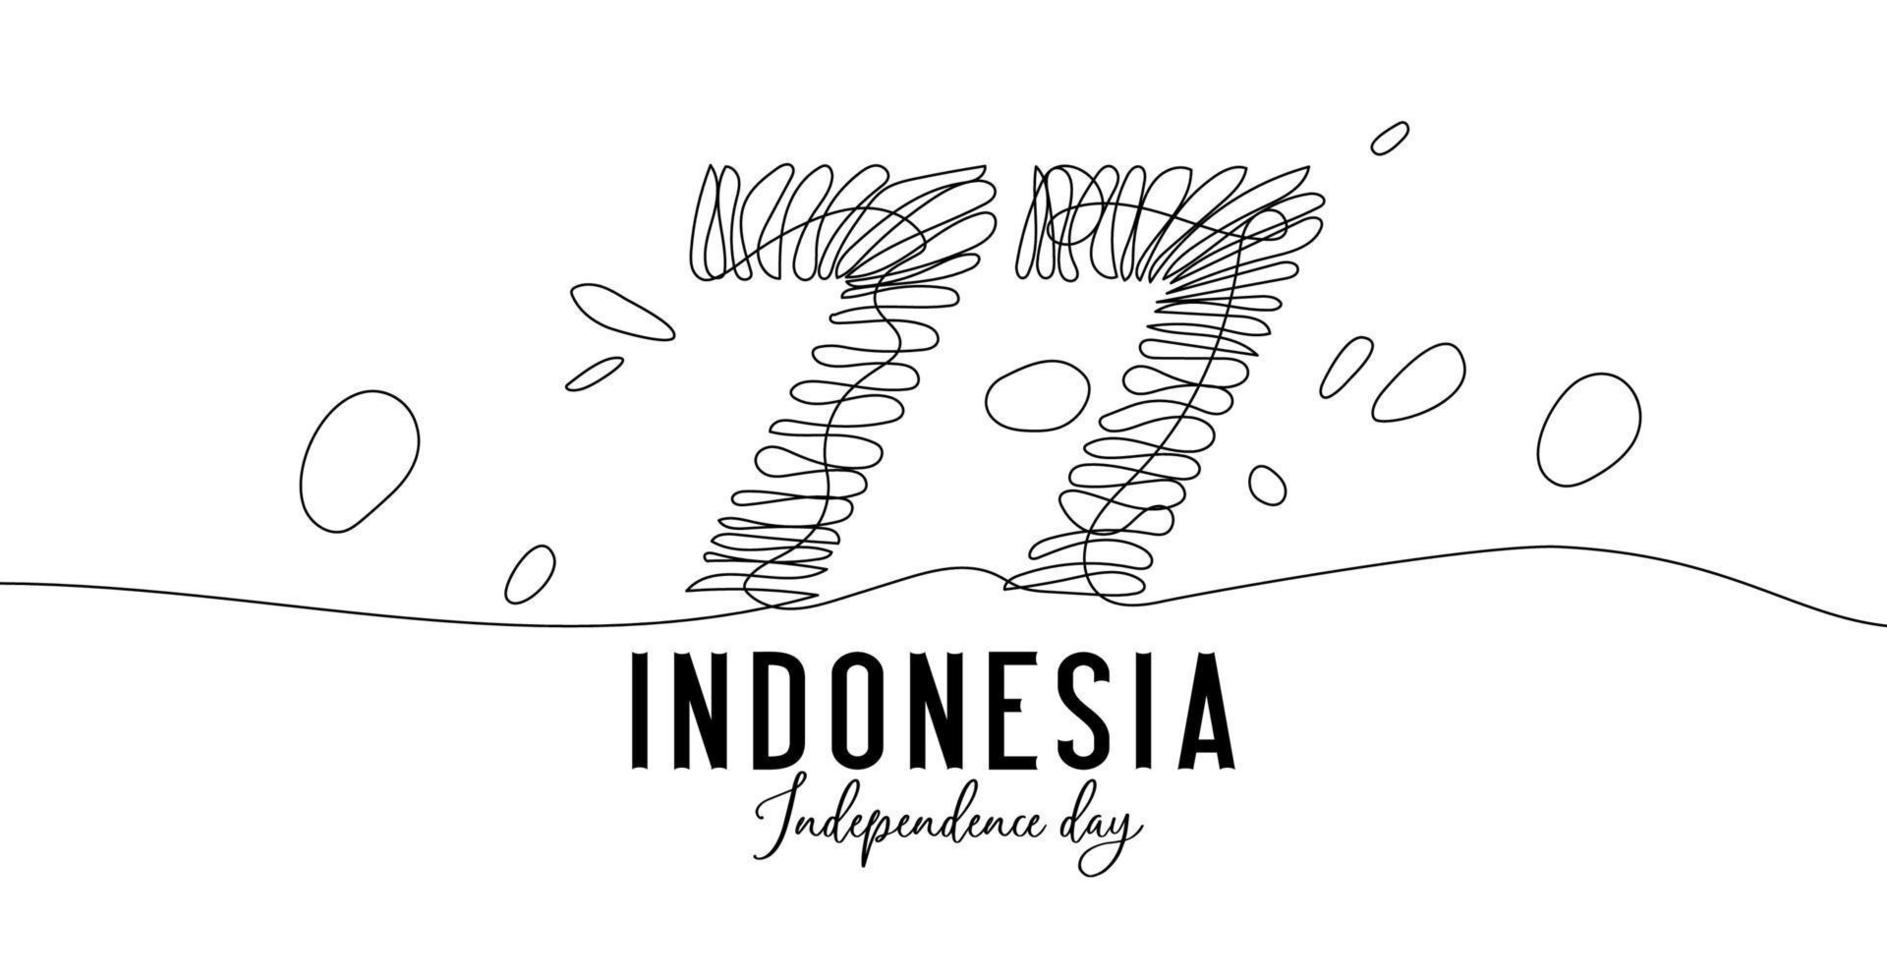 77 års självständighetsdag i Indonesien kontinuerlig en linjekonstteckning. enkel och elegant logotyp för Indonesiens självständighetsdag vektor